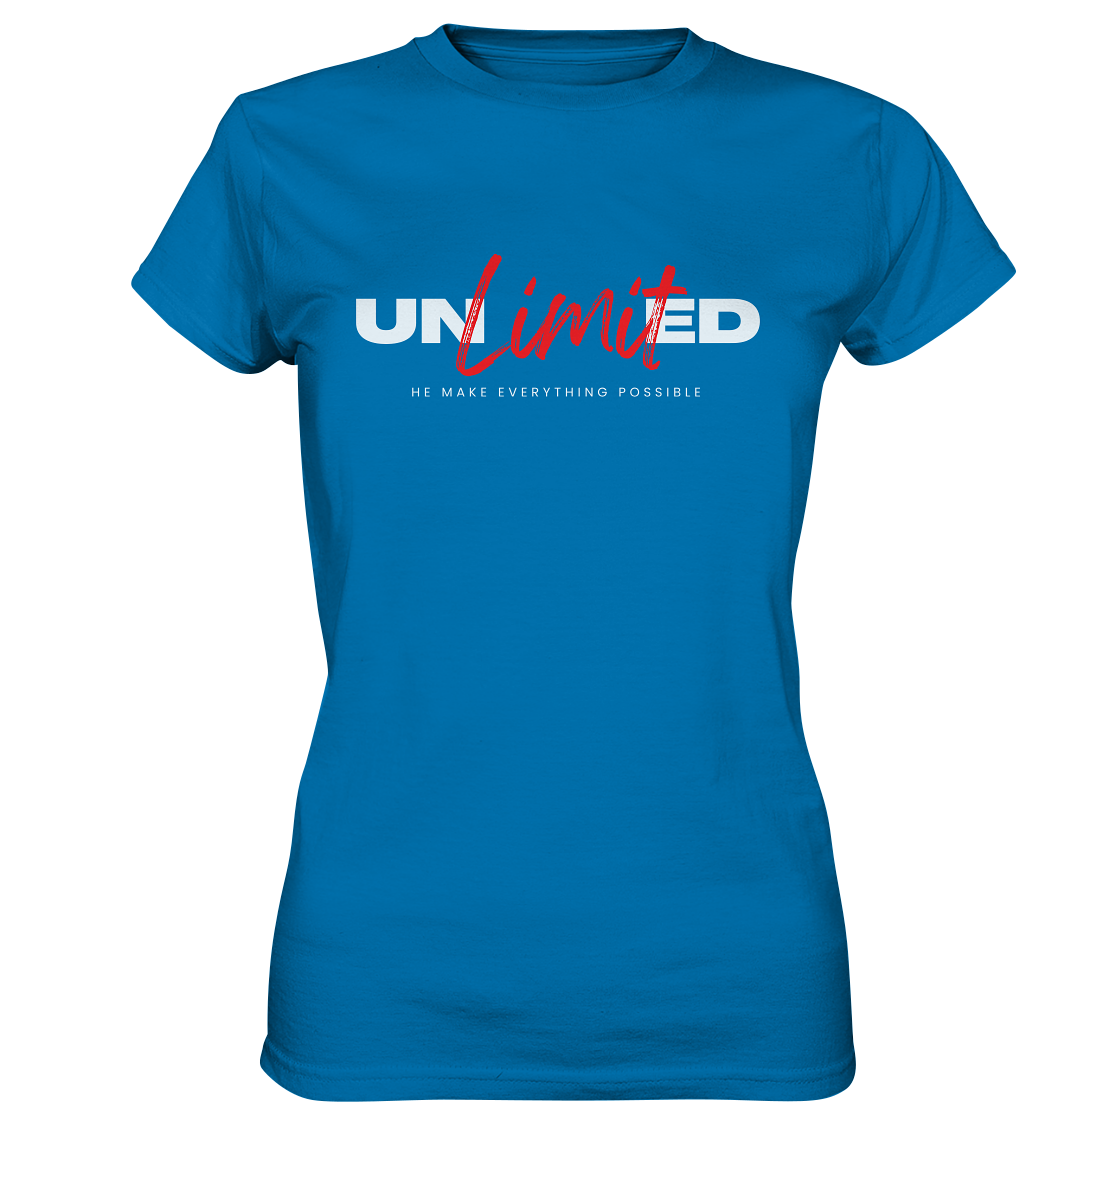 Unbegrenzte Möglichkeiten "Unlimited" - Ladies Premium Shirt